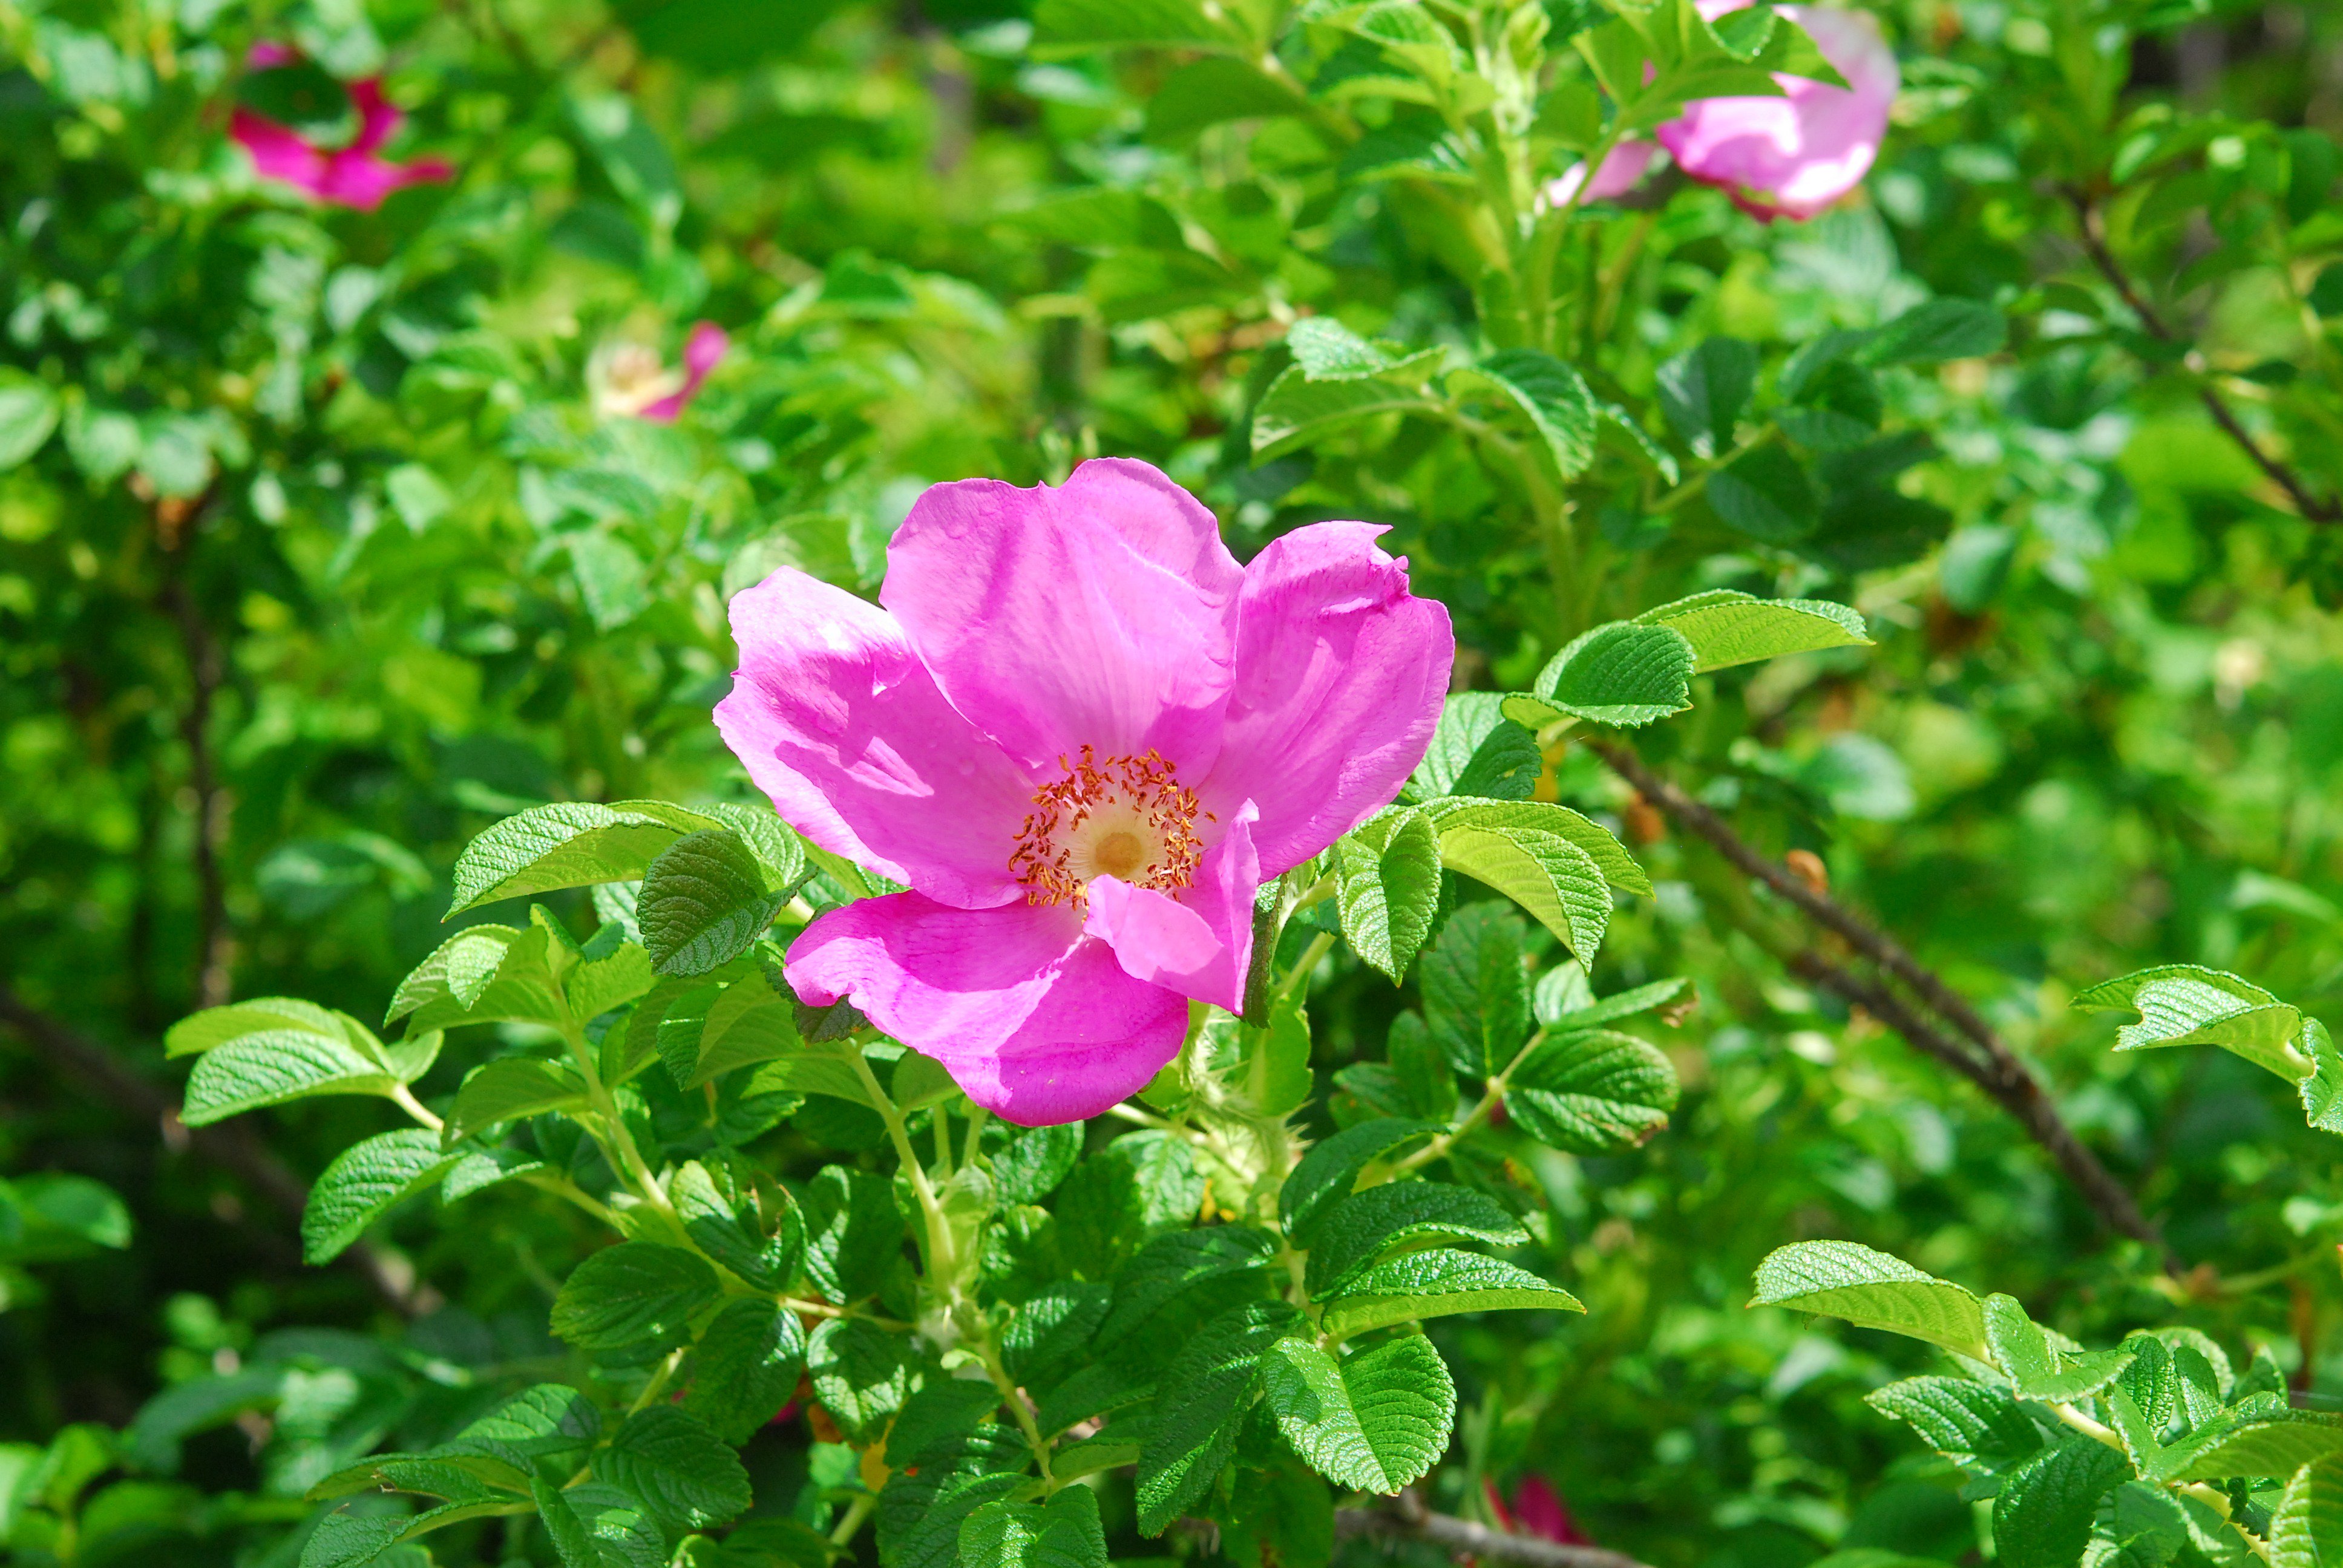 六甲高山植物園 バラの仲間いろいろ咲いています 桃色の花は サンショウバラ 葉っぱがサンショウの葉に似ているのでサンショウバラ サンショウの香りはしません 蜂たちが新しい花に続々と飛んできます 白とピンクの花は ハマナス の花 北国の